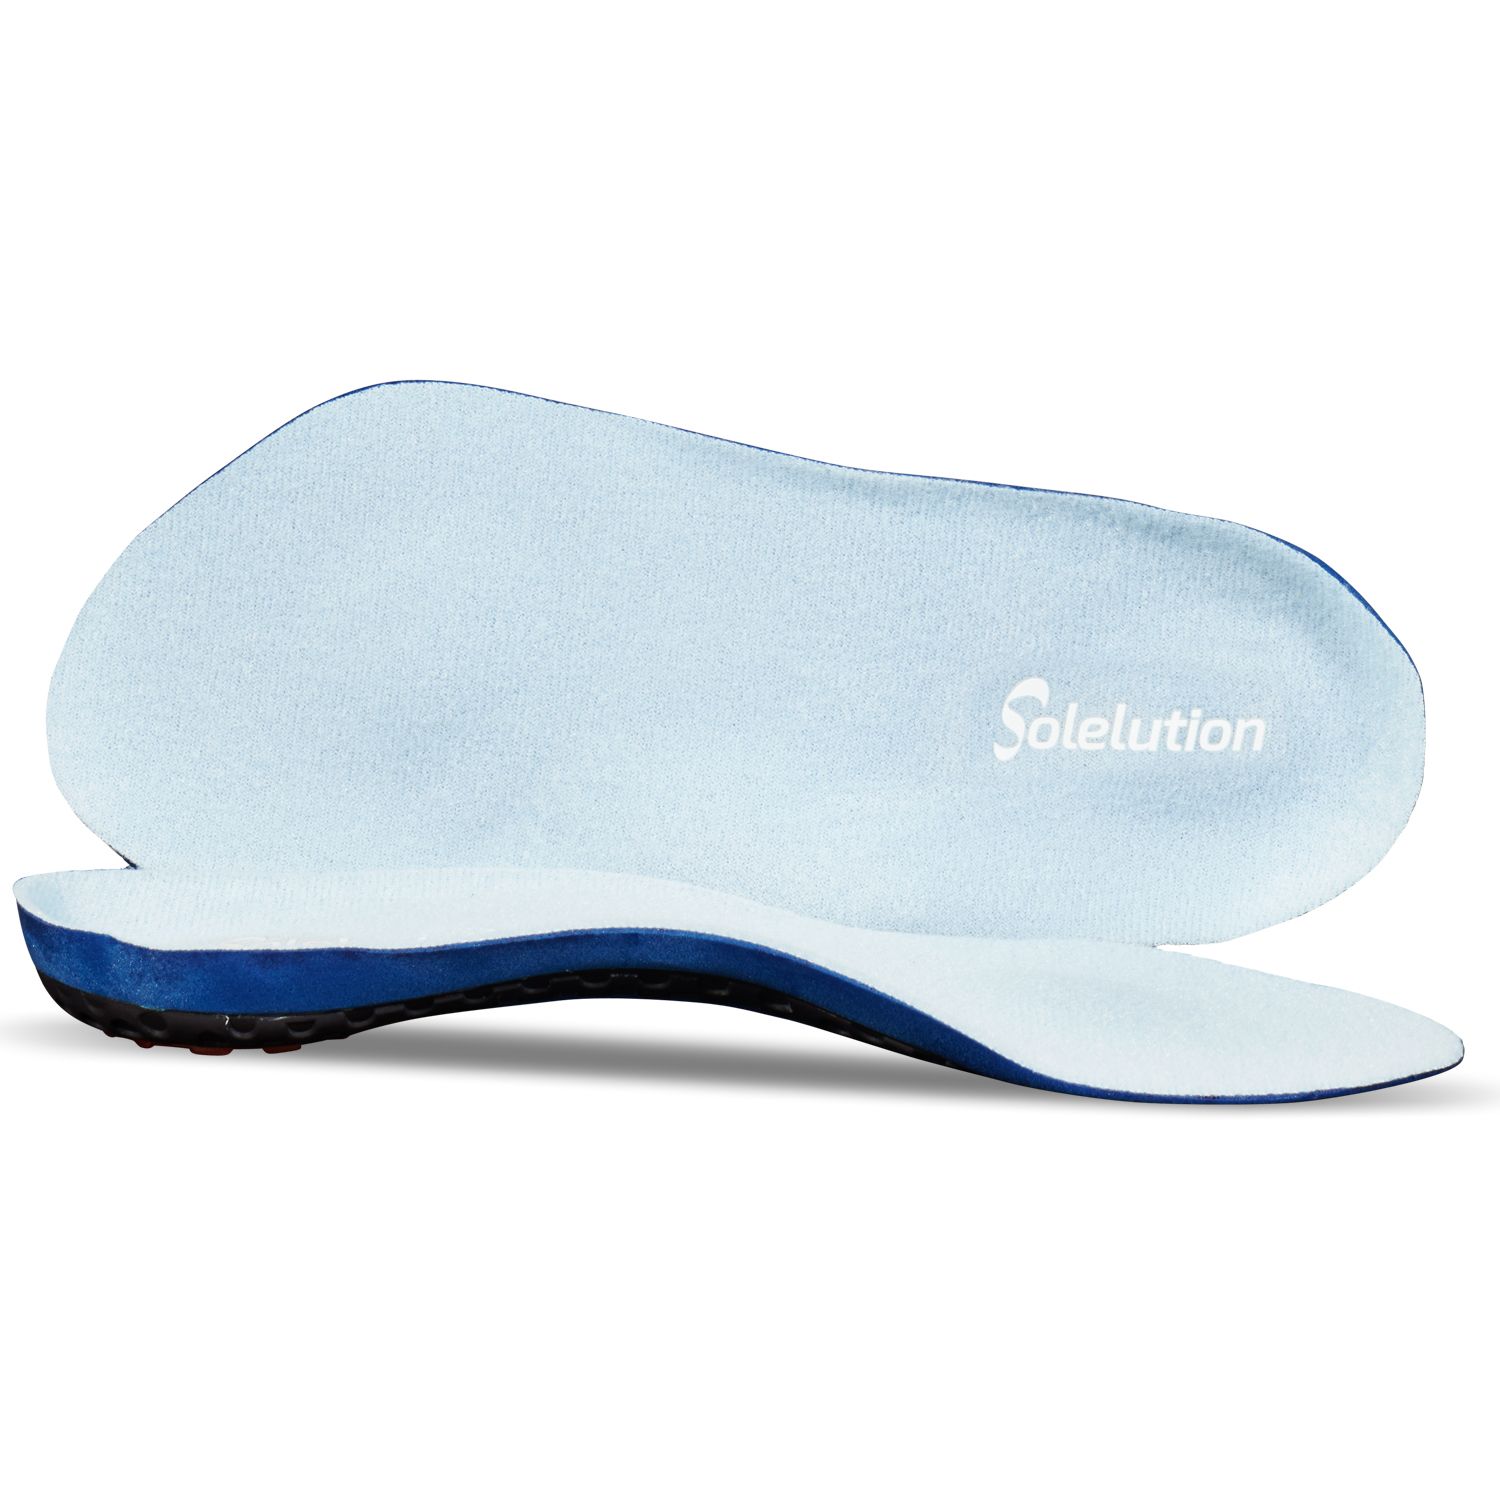 solelution high heel comfort insoles for sale